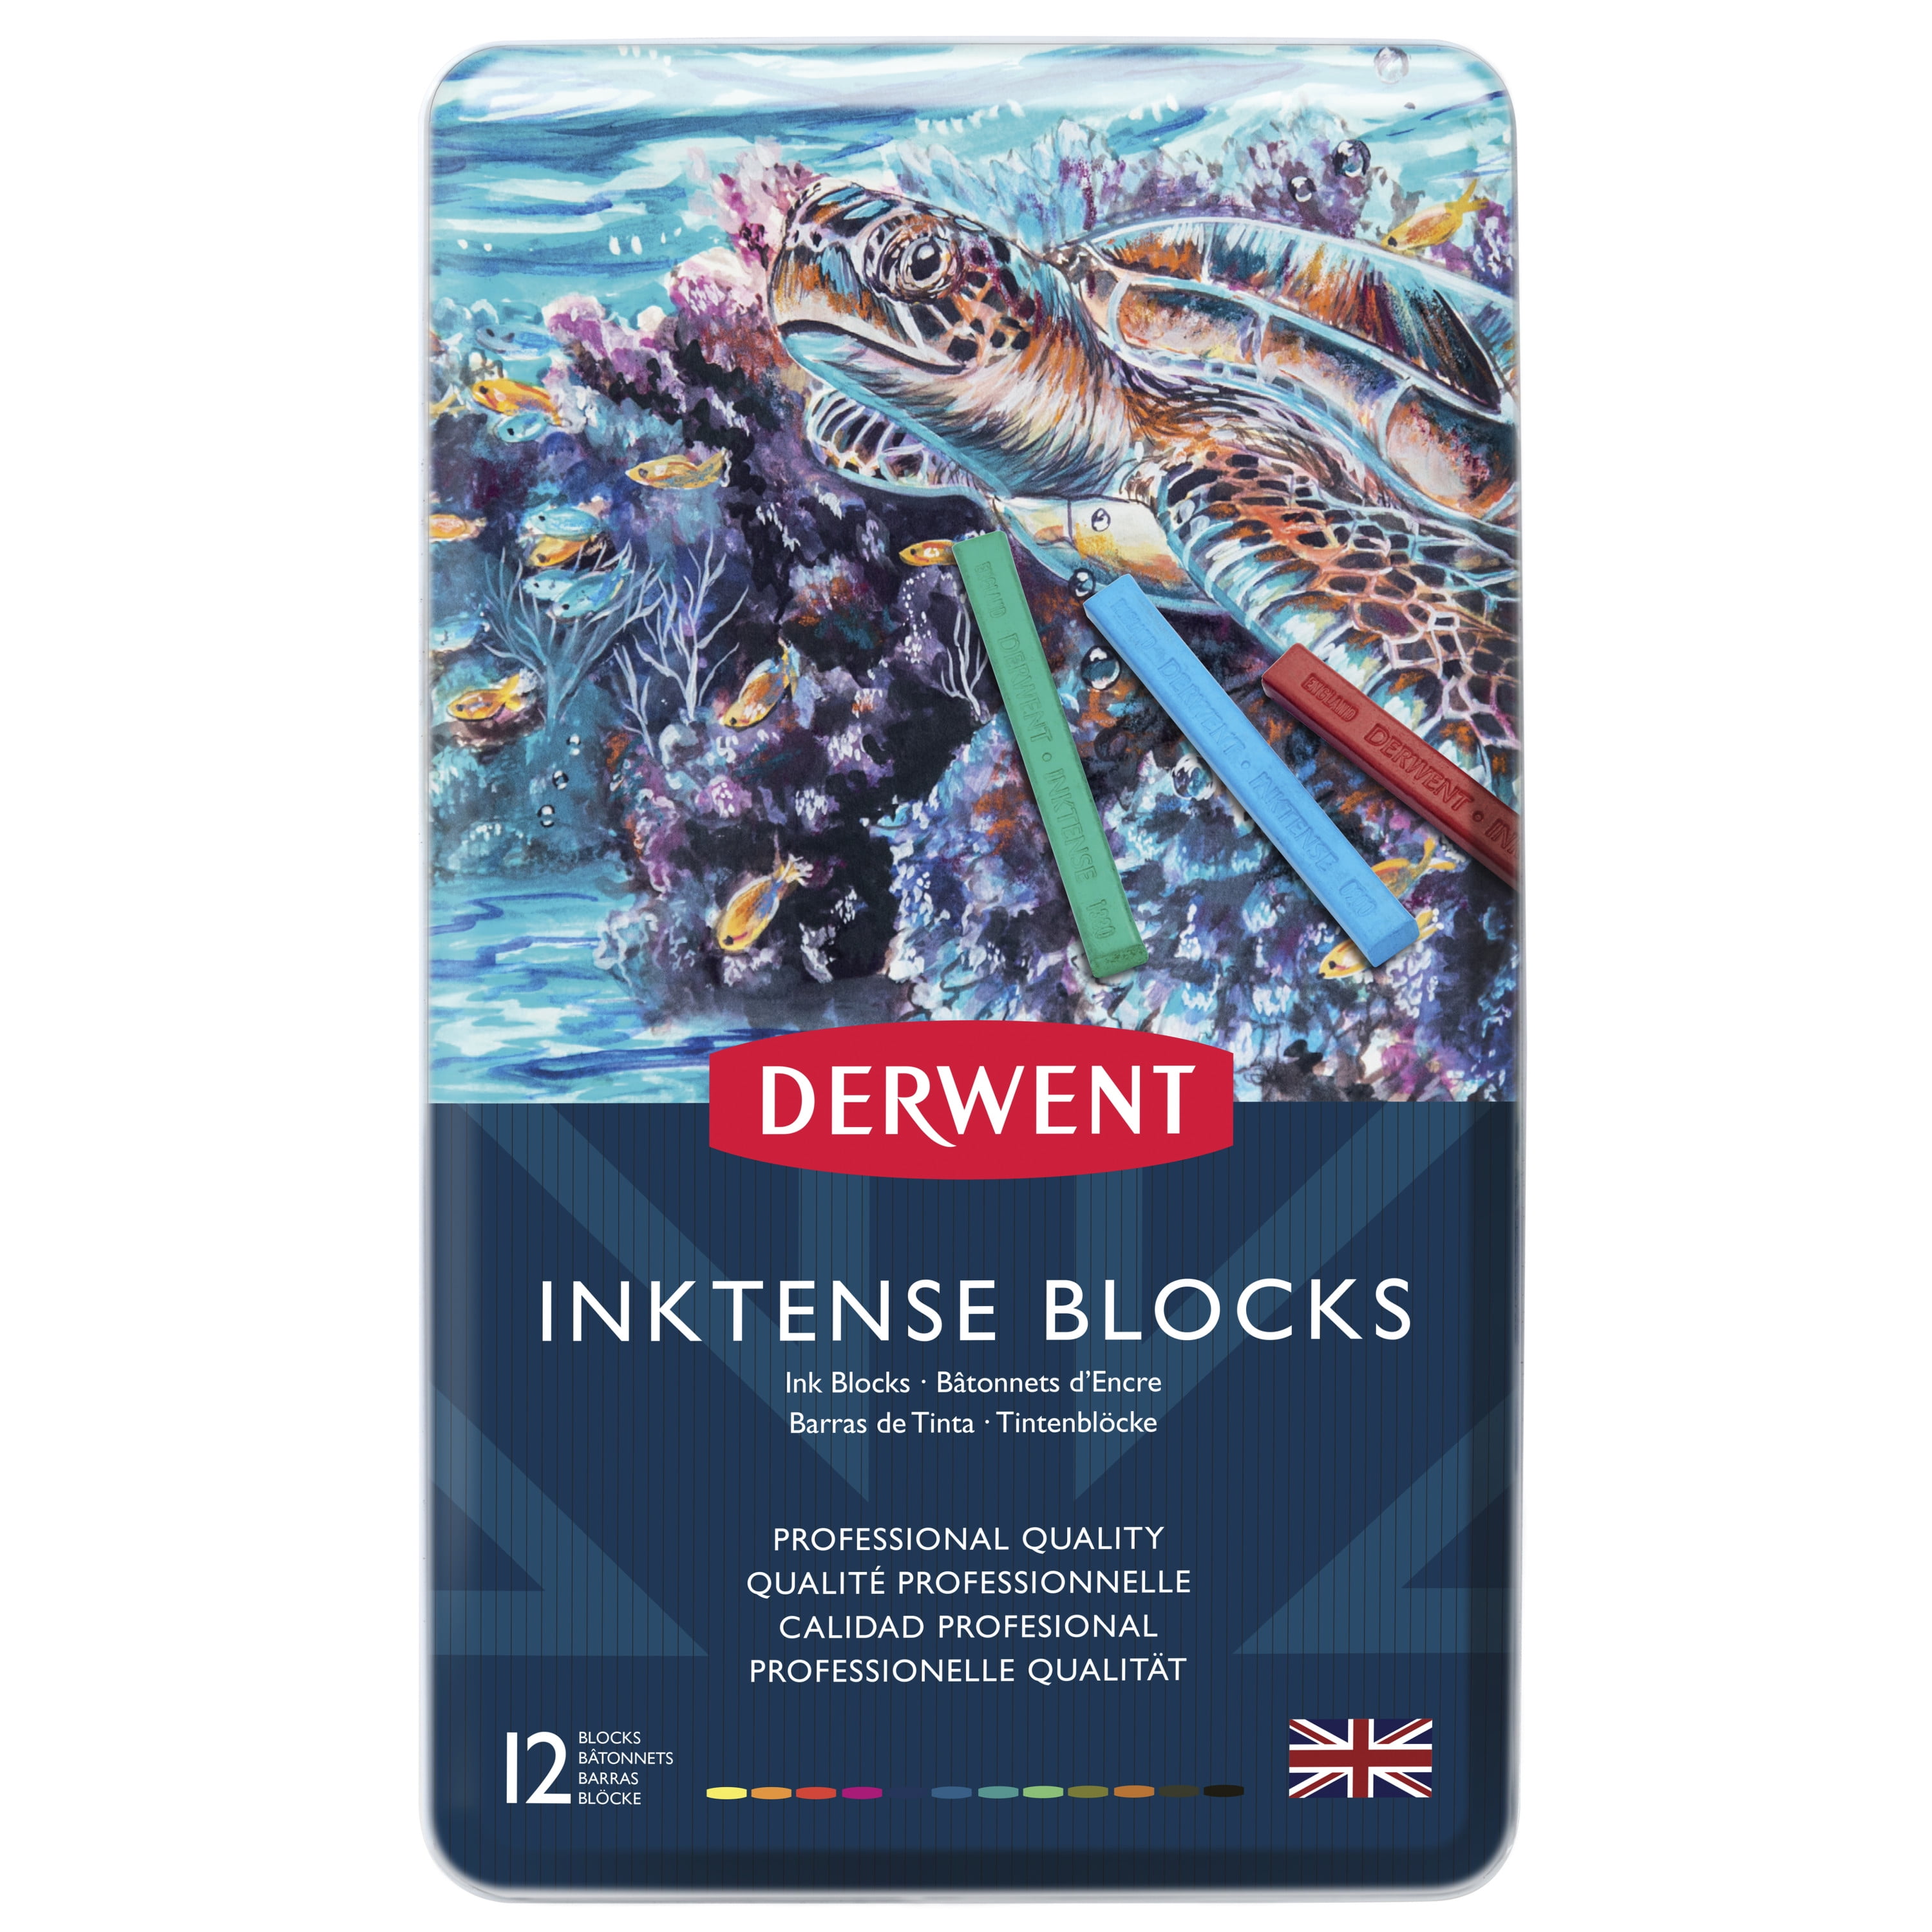 Derwent Inktense Blocks 12pc Tin Set